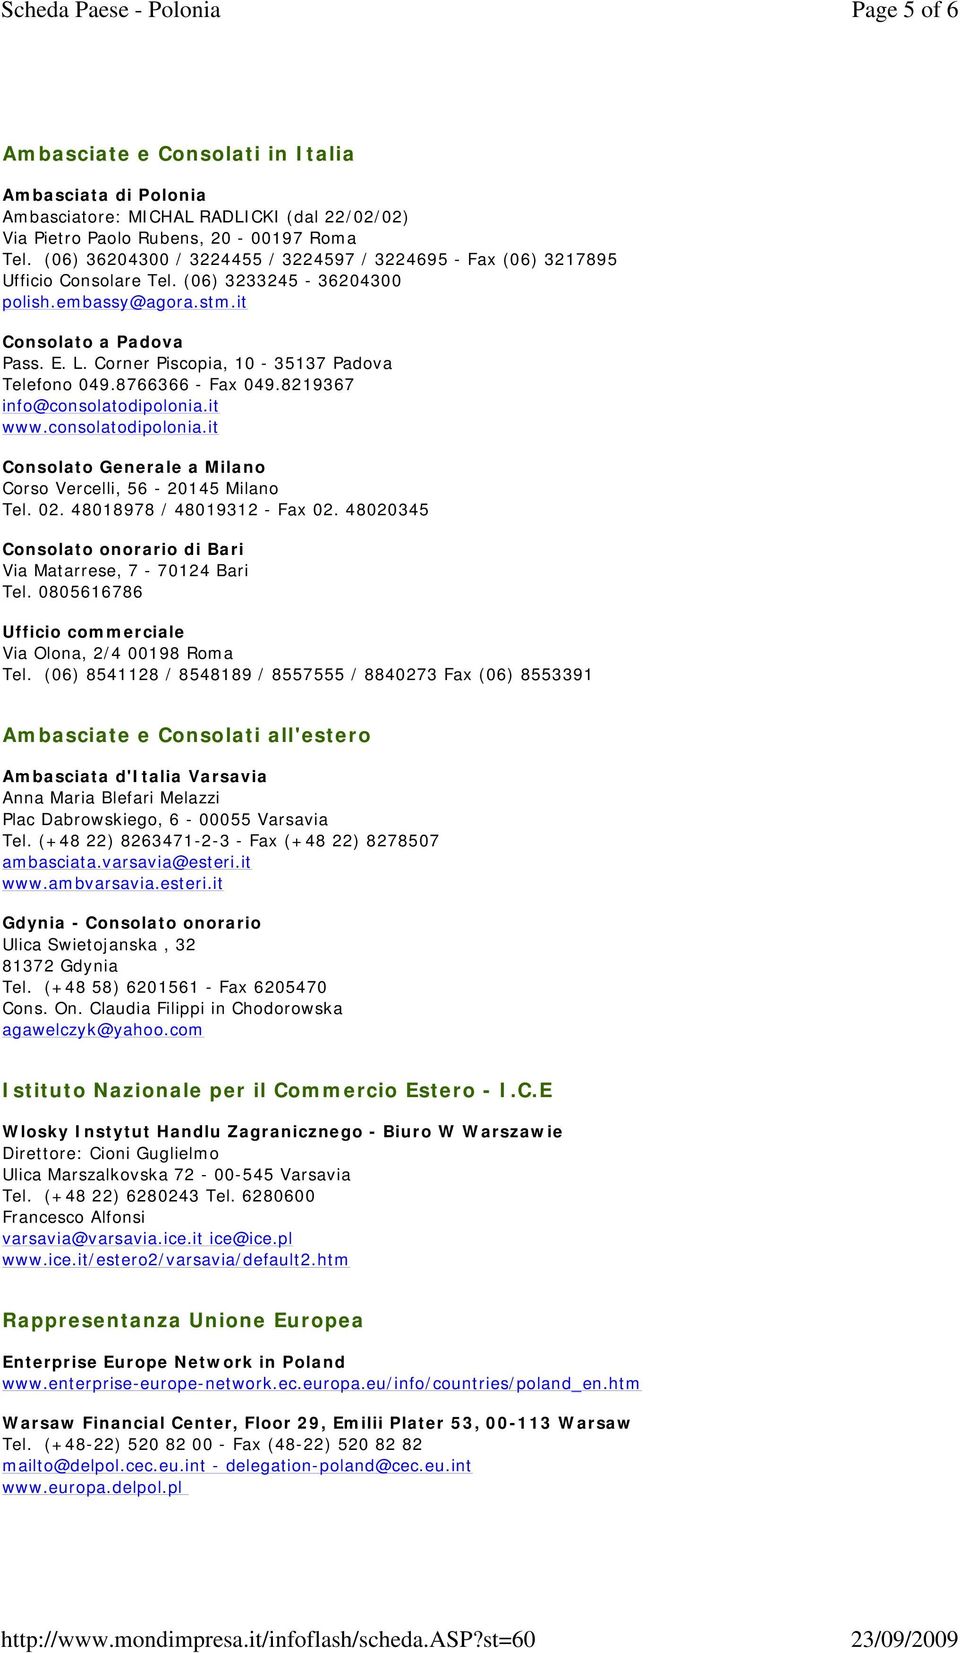 Corner Piscopia, 10-35137 Padova Telefono 049.8766366 - Fax 049.8219367 info@consolatodipolonia.it www.consolatodipolonia.it Consolato Generale a Milano Corso Vercelli, 56-20145 Milano Tel. 02.